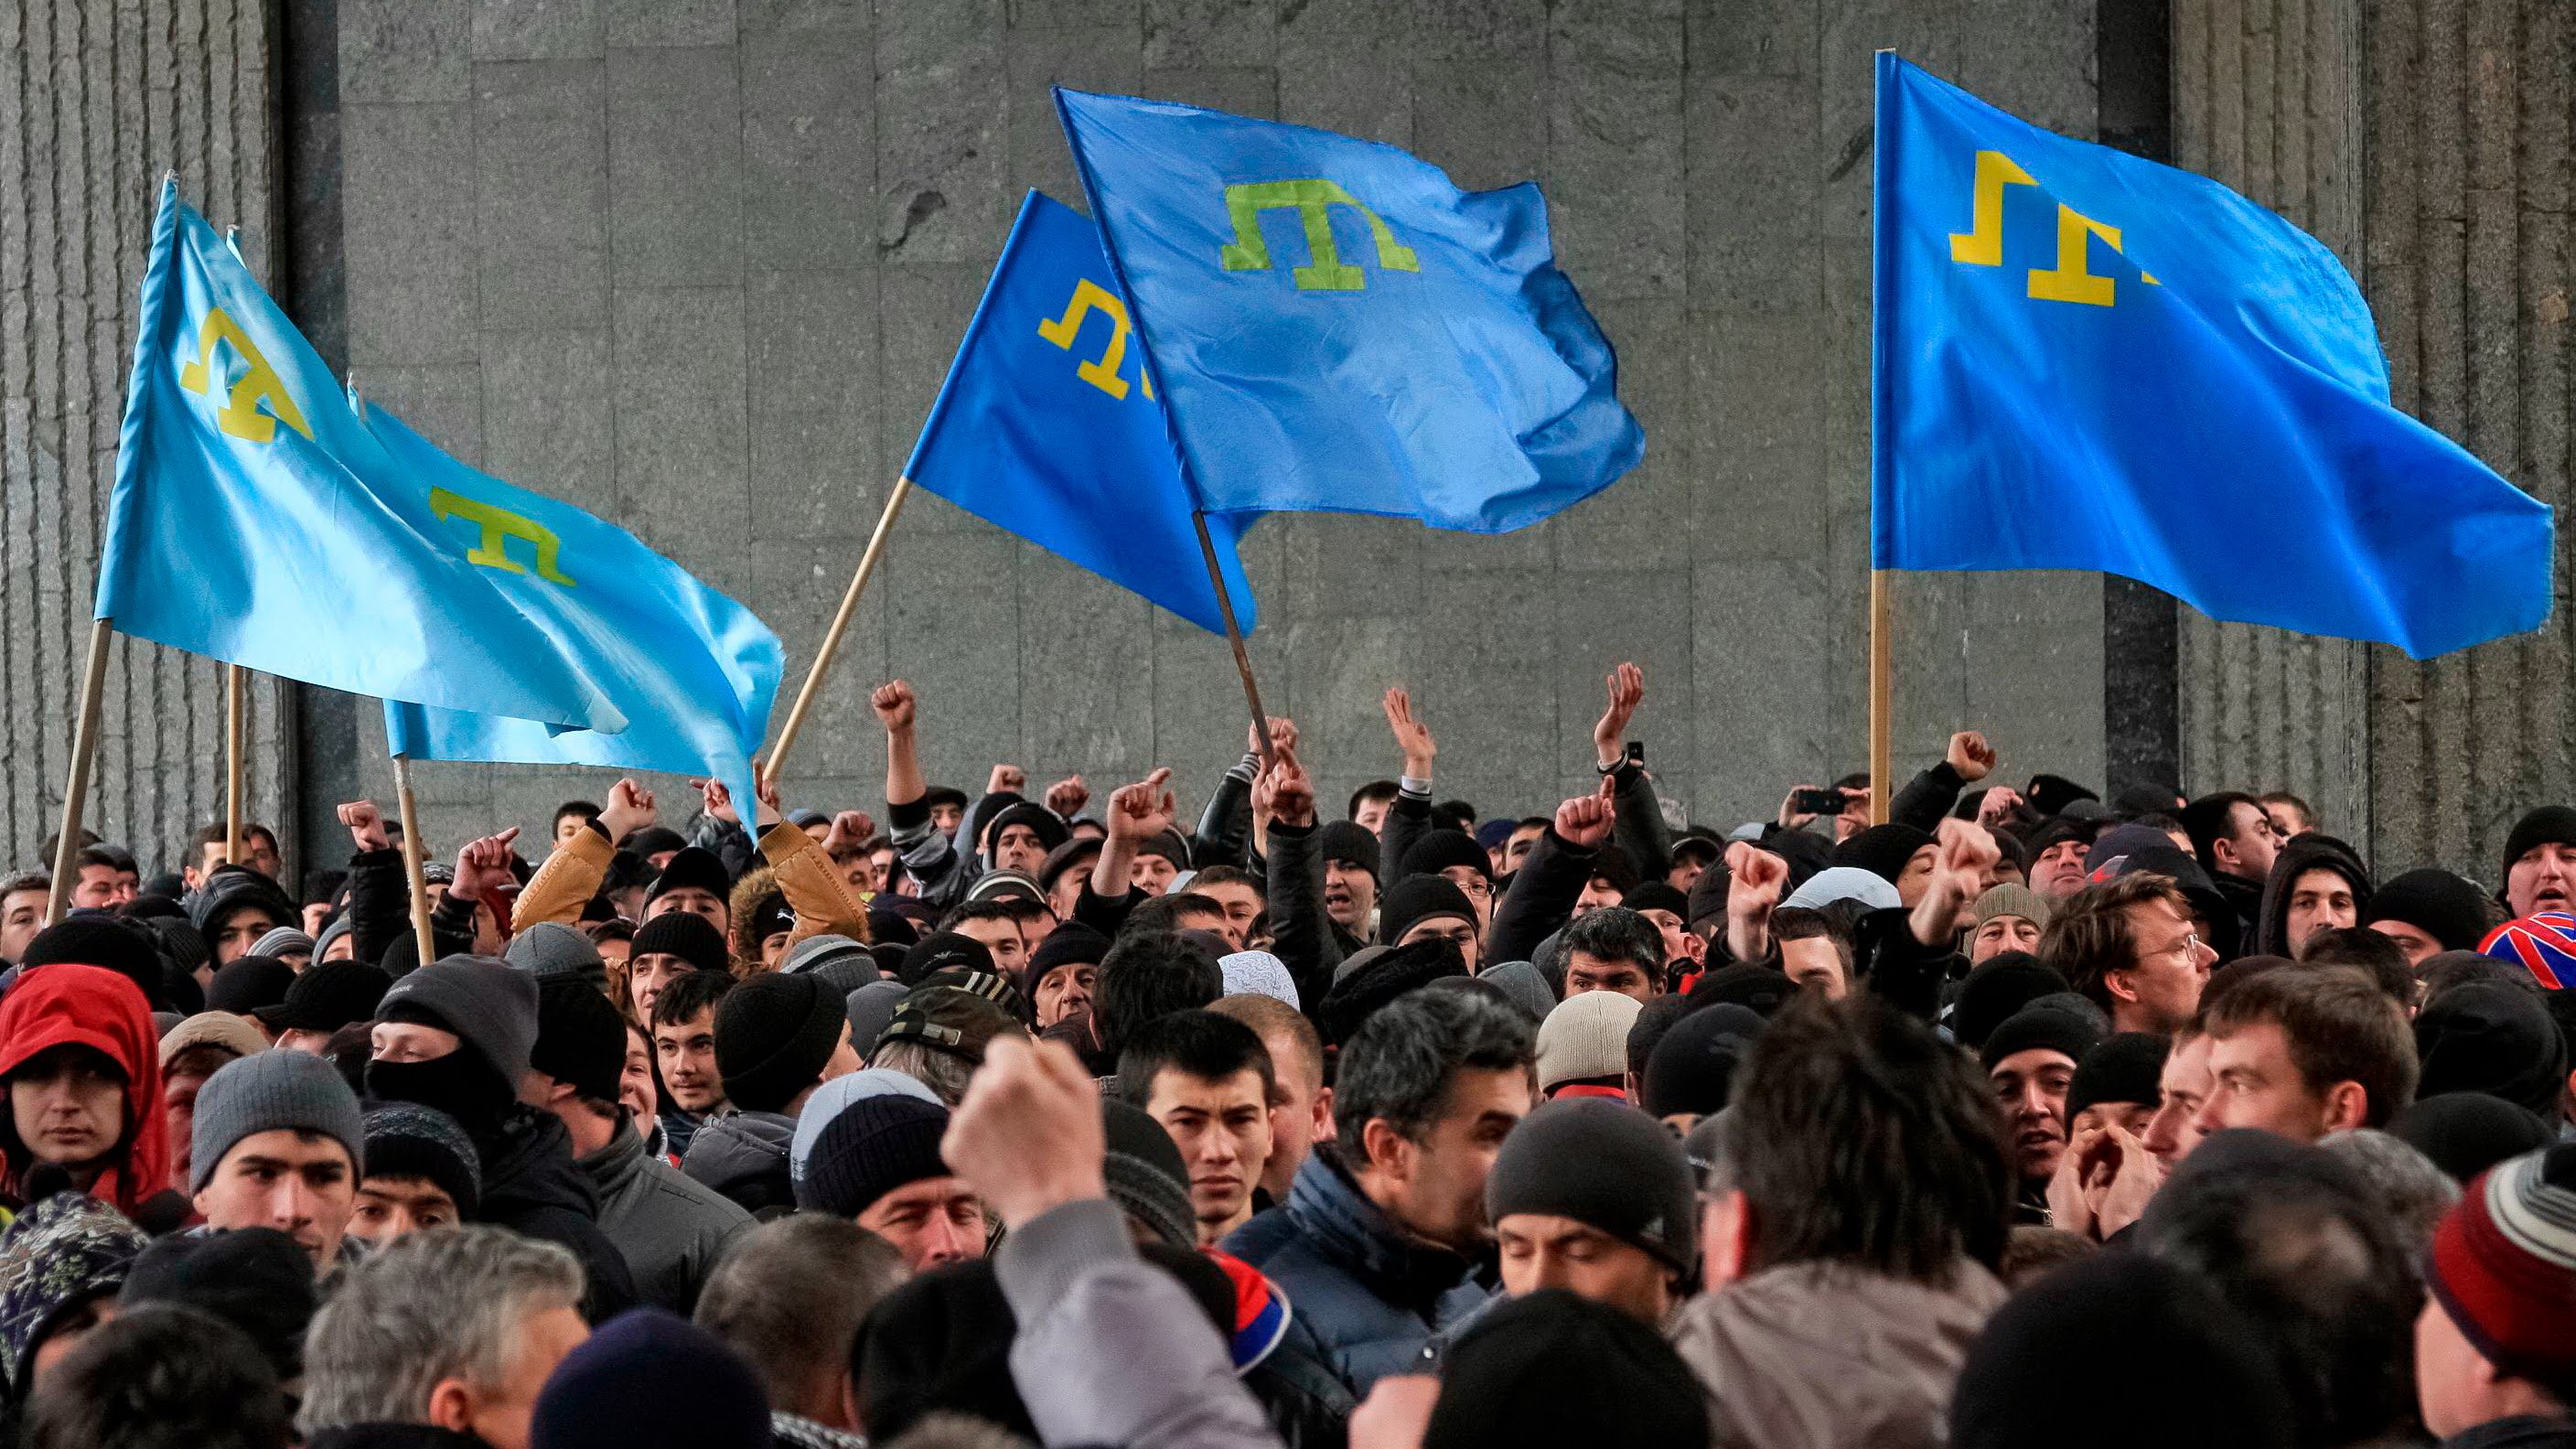 Автономии крымских татар в Украине быть: Порошенко намерен изменить конституцию совместно с представителями этноса